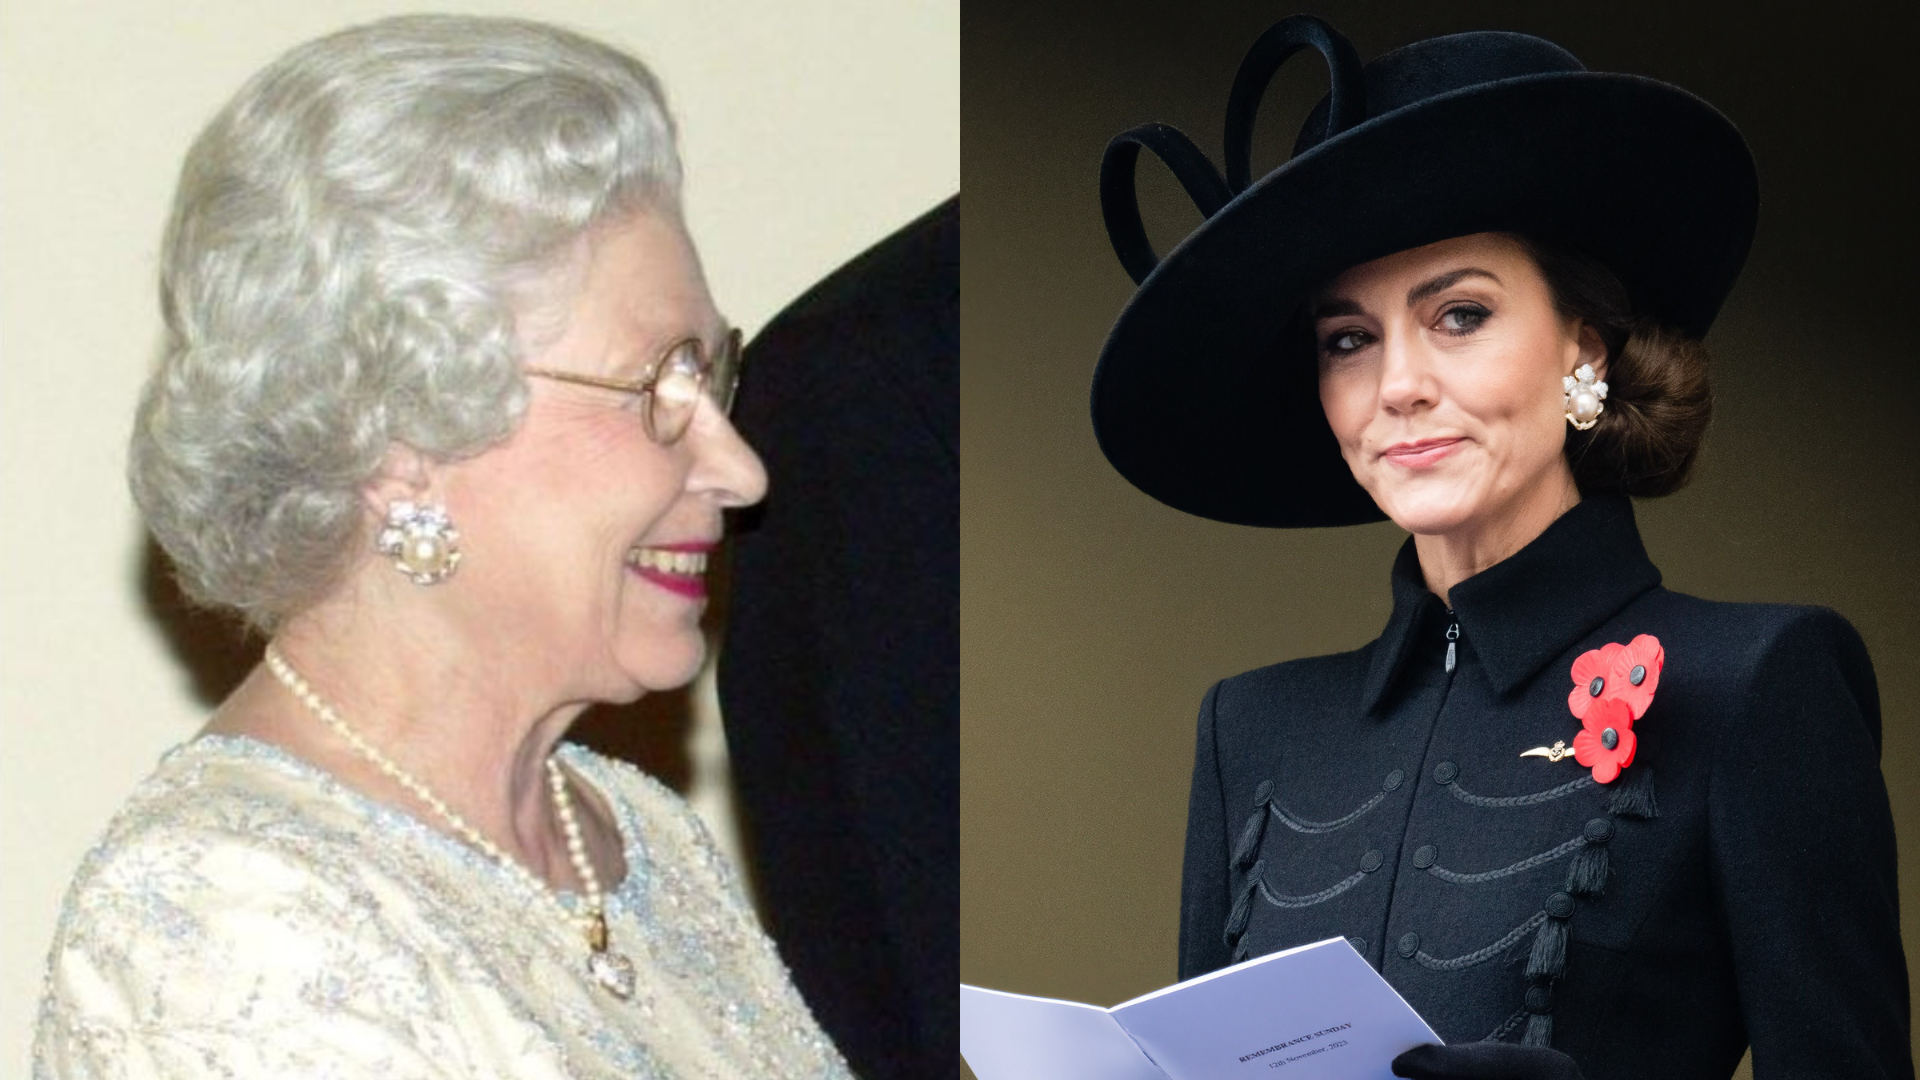 Công nương Kate Middleton và bộ sưu tập trang sức độc quyền, được thừa hưởng từ Nữ hoàng Elizabeth II